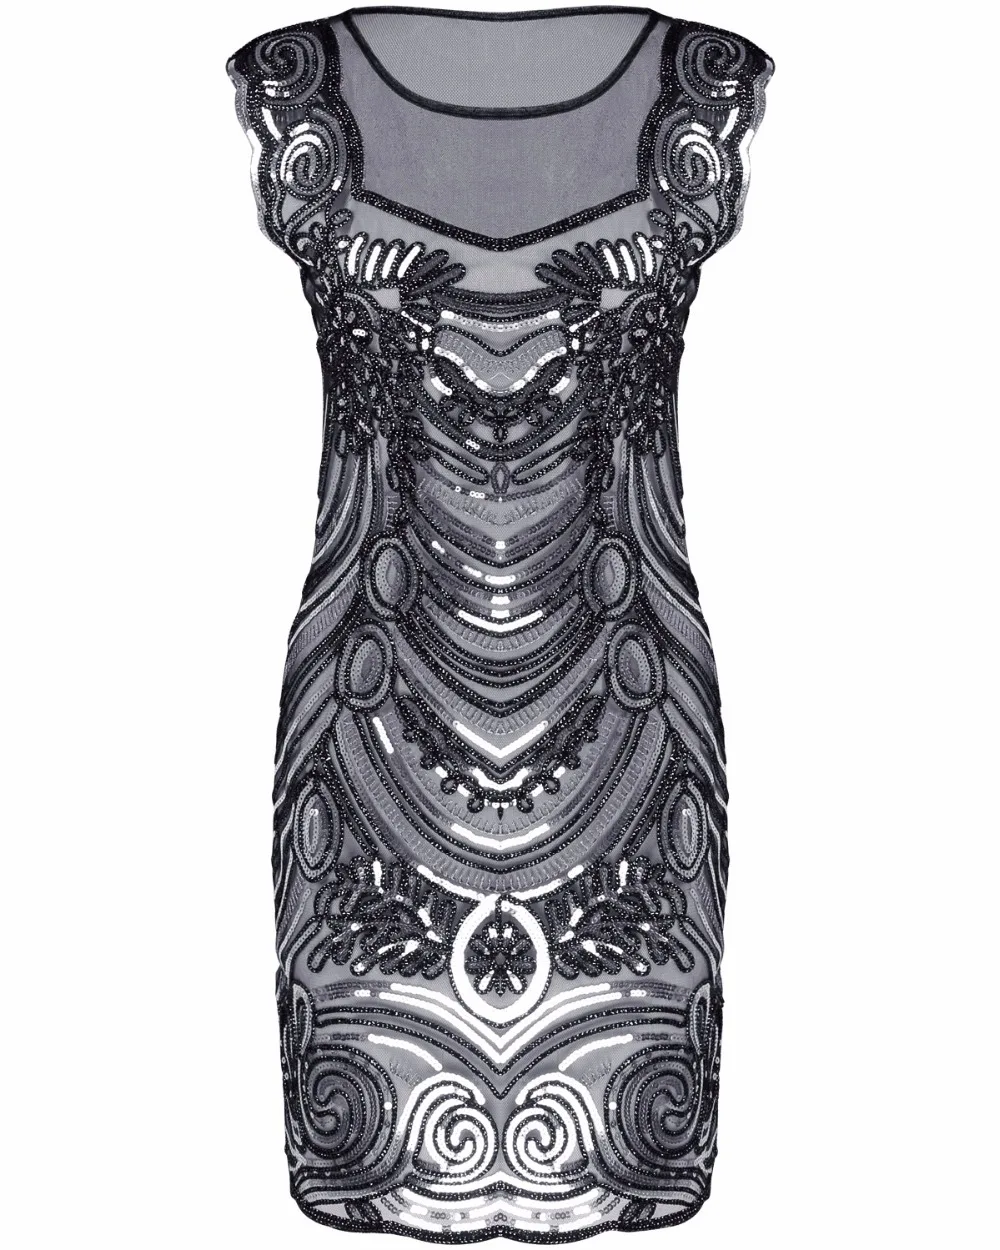 Gatsby платье с блестками, с вышивкой, с круглым вырезом, с пайетками, художественное платье с воланами, женское летнее платье 1920 s, винтажное платье, платье для вечеринок, сексуальное Клубное платье